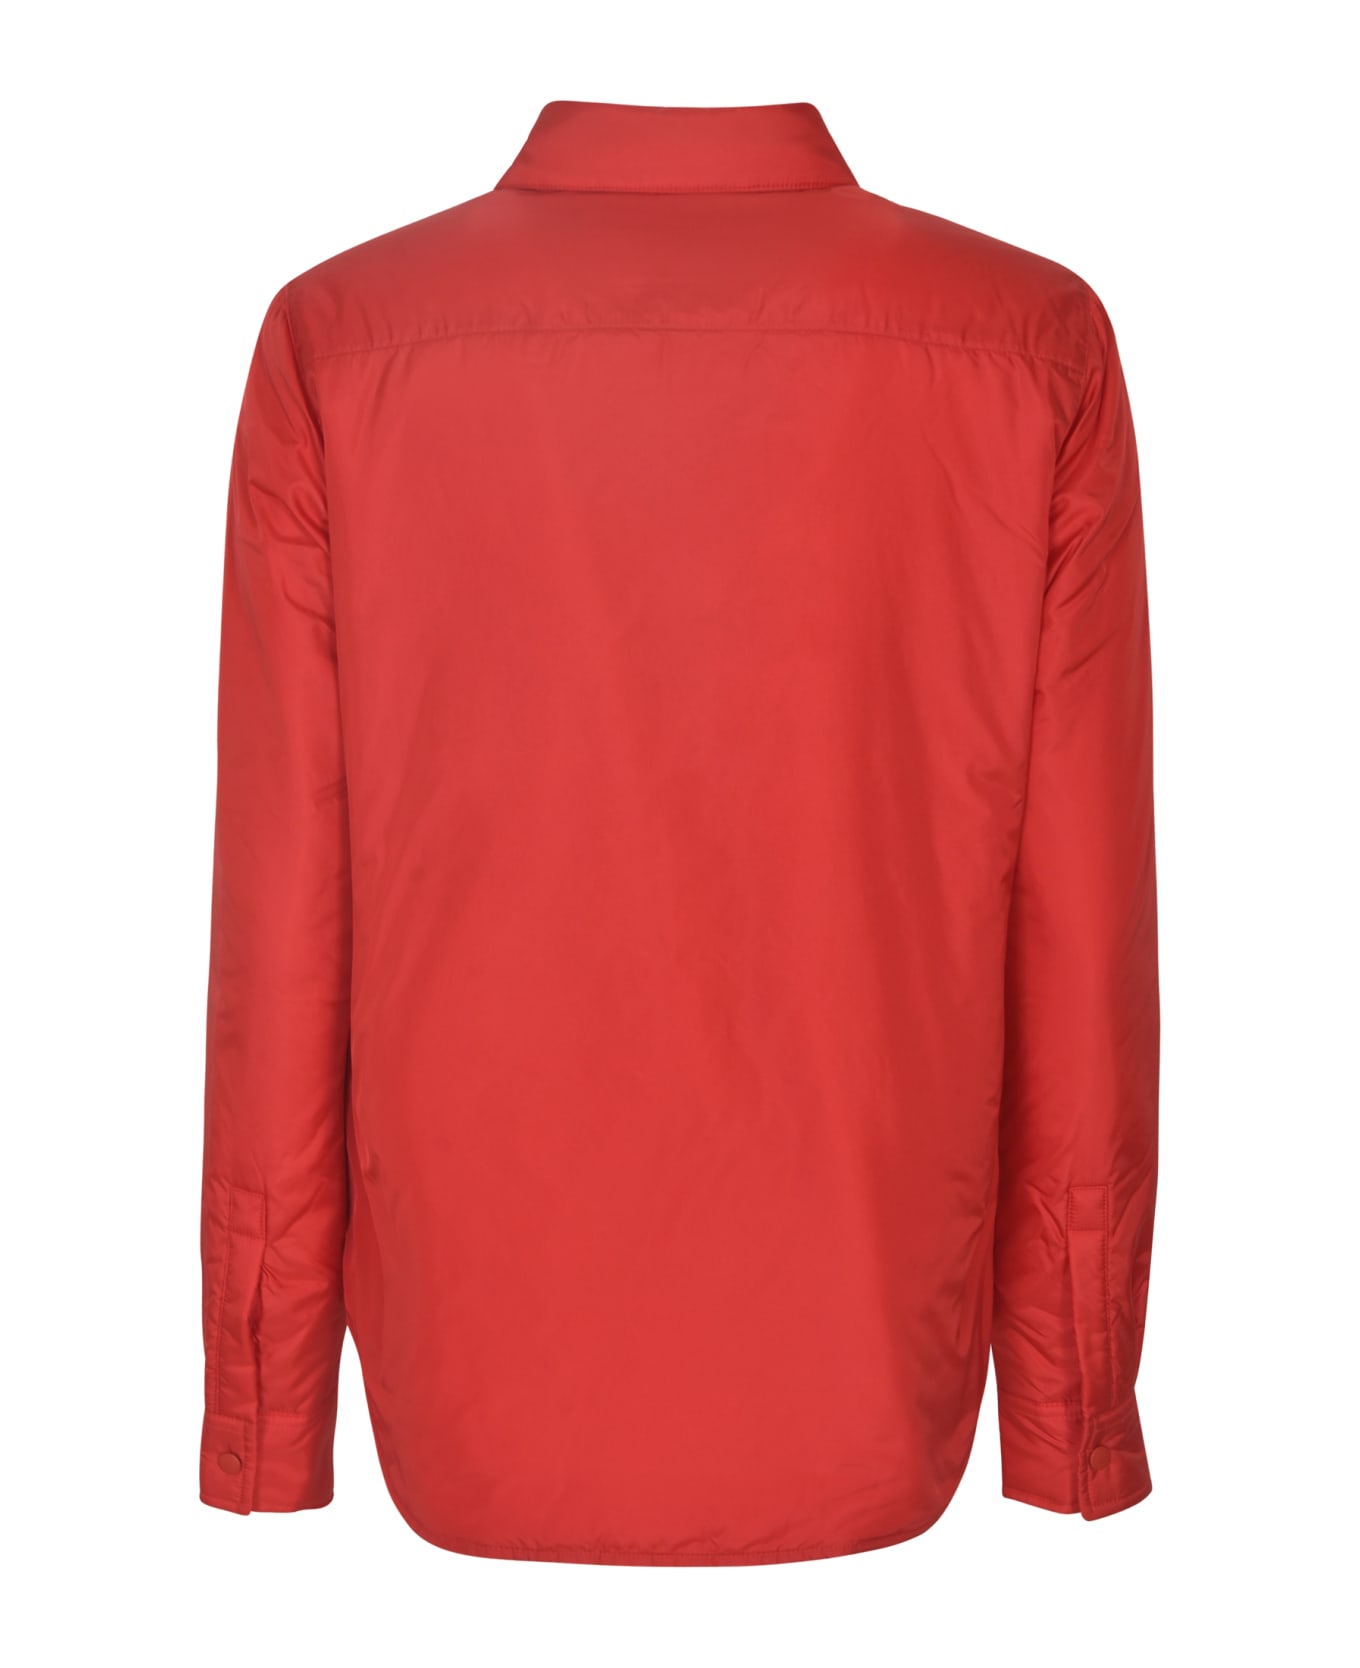 Aspesi Long-sleeved Shirt - Red